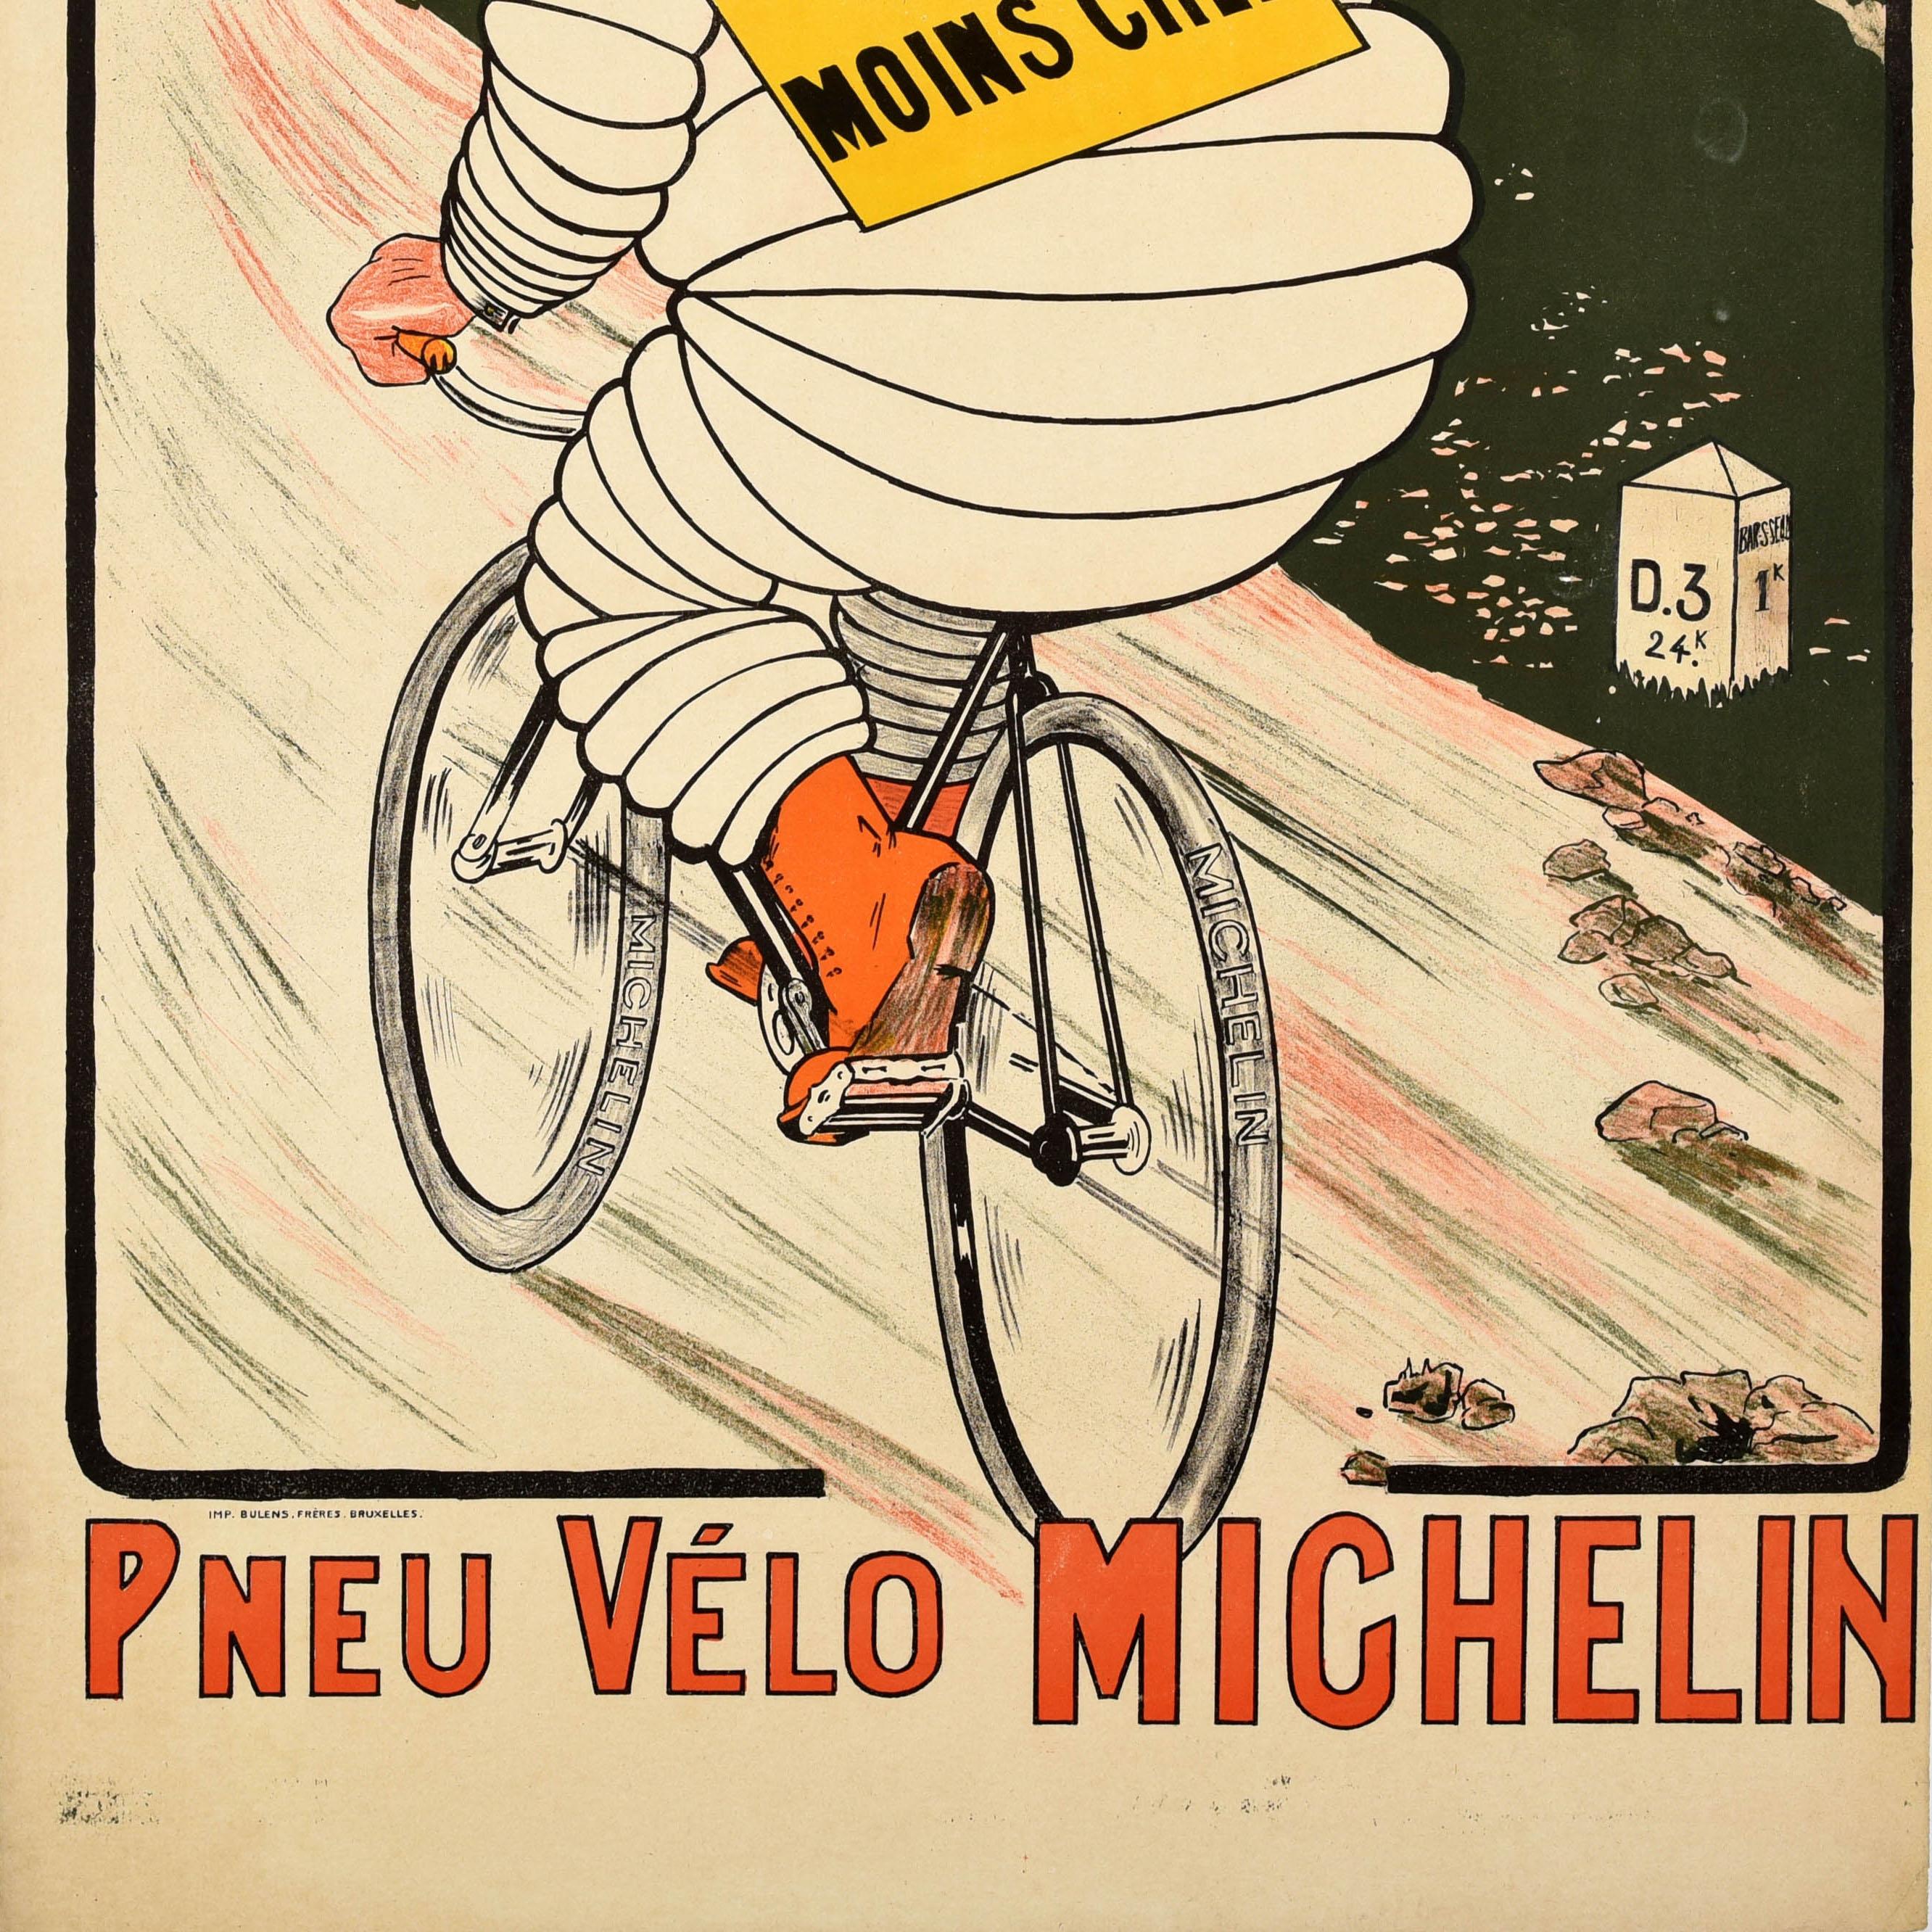 Originales antikes Werbeplakat für Michelin-Reifen mit einer großartigen Illustration, die das Markenzeichen von Bibendum - die ikonische Figur des Michelin-Männchens aus Reifen - zeigt, wie er eine Zigarre raucht und mit einem Fahrrad in hohem